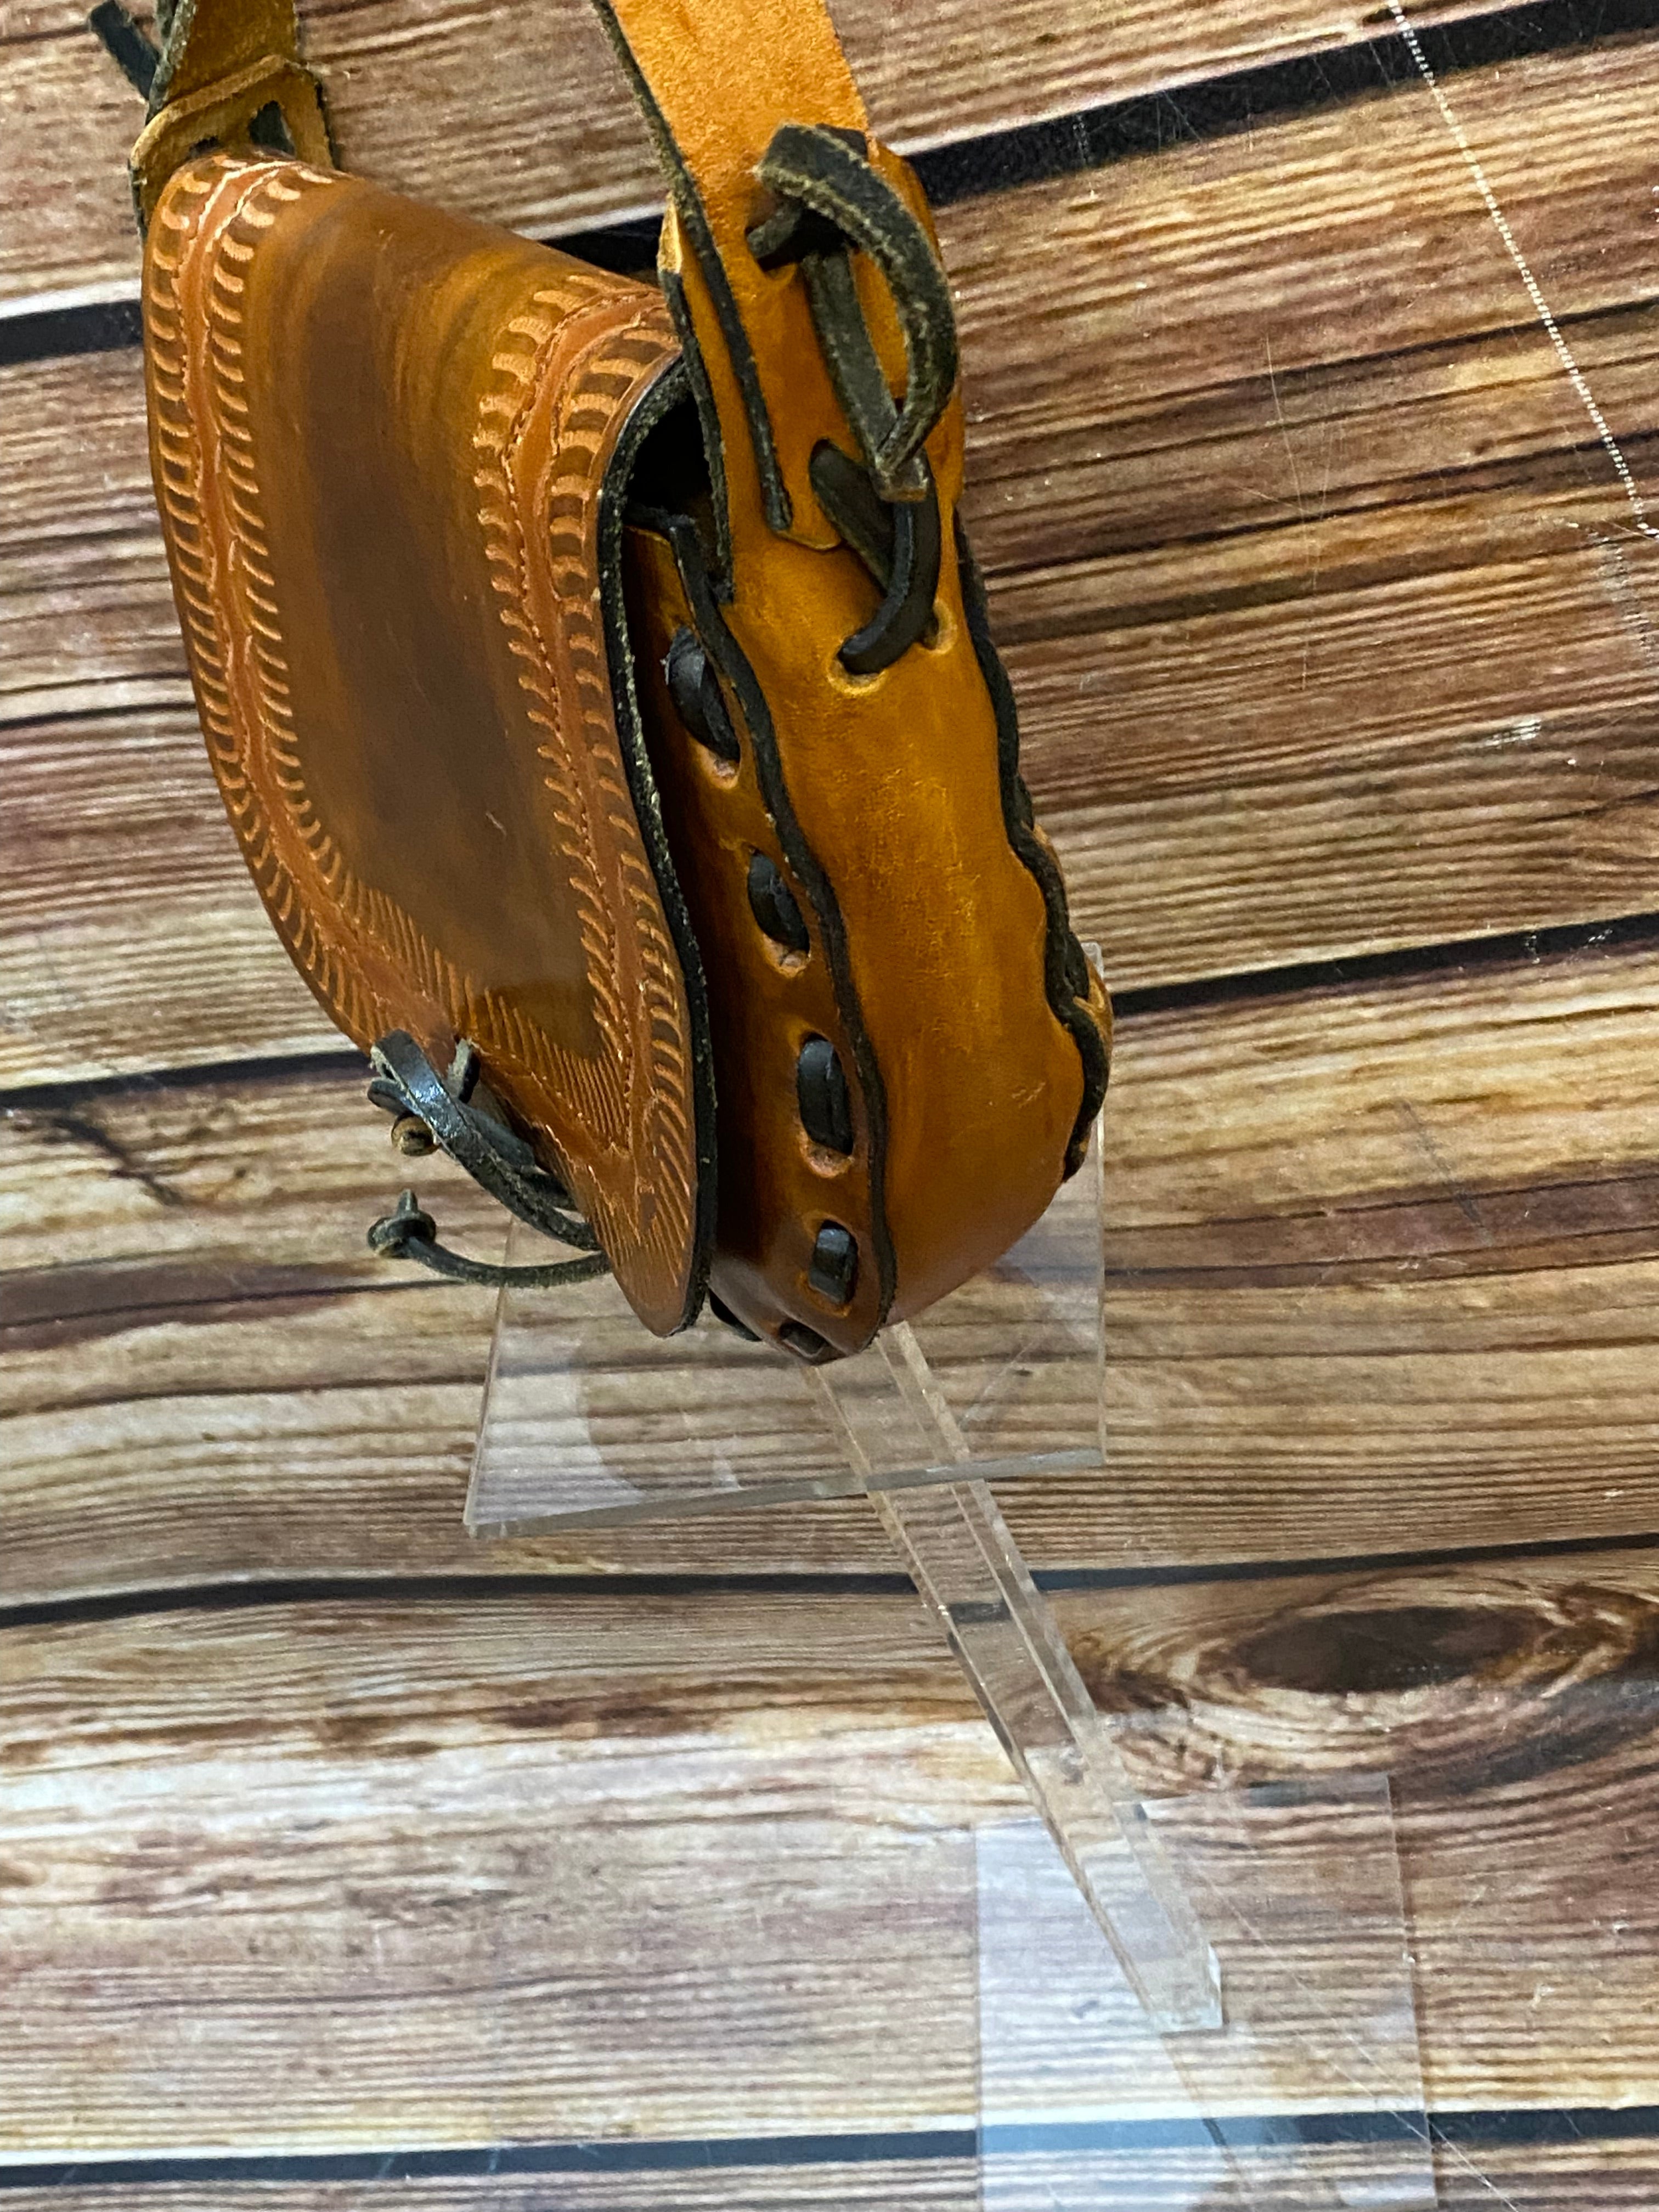 Kleine Umhänge-Ledertasche Vintage braun Satteltasche gestanzt Handgefertigt